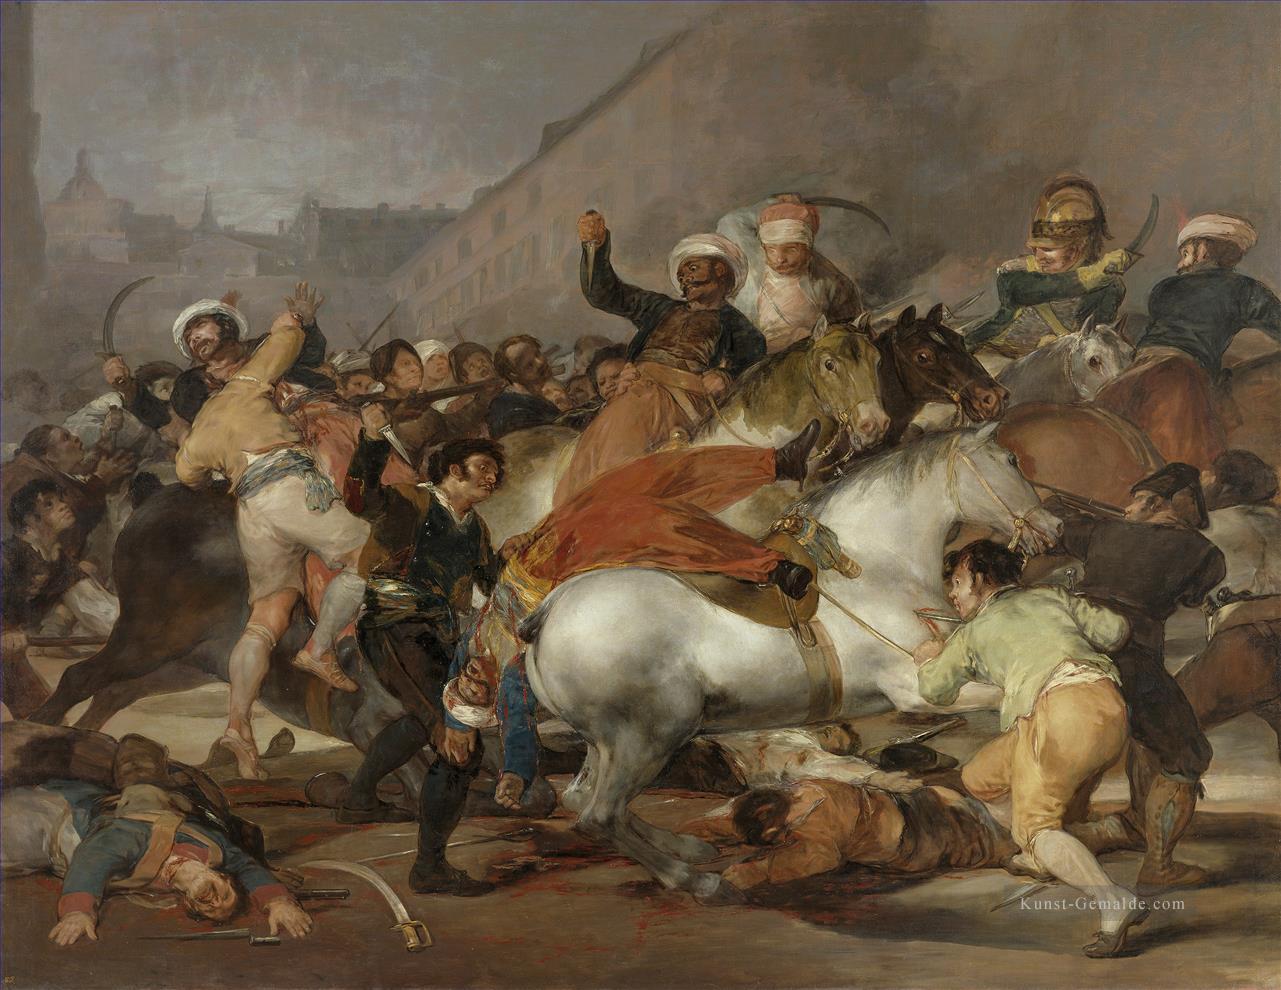 Der Zweite Mai 1808 oder die Ladung der Mamelukes von Francisco Goya Militärkrieg Ölgemälde